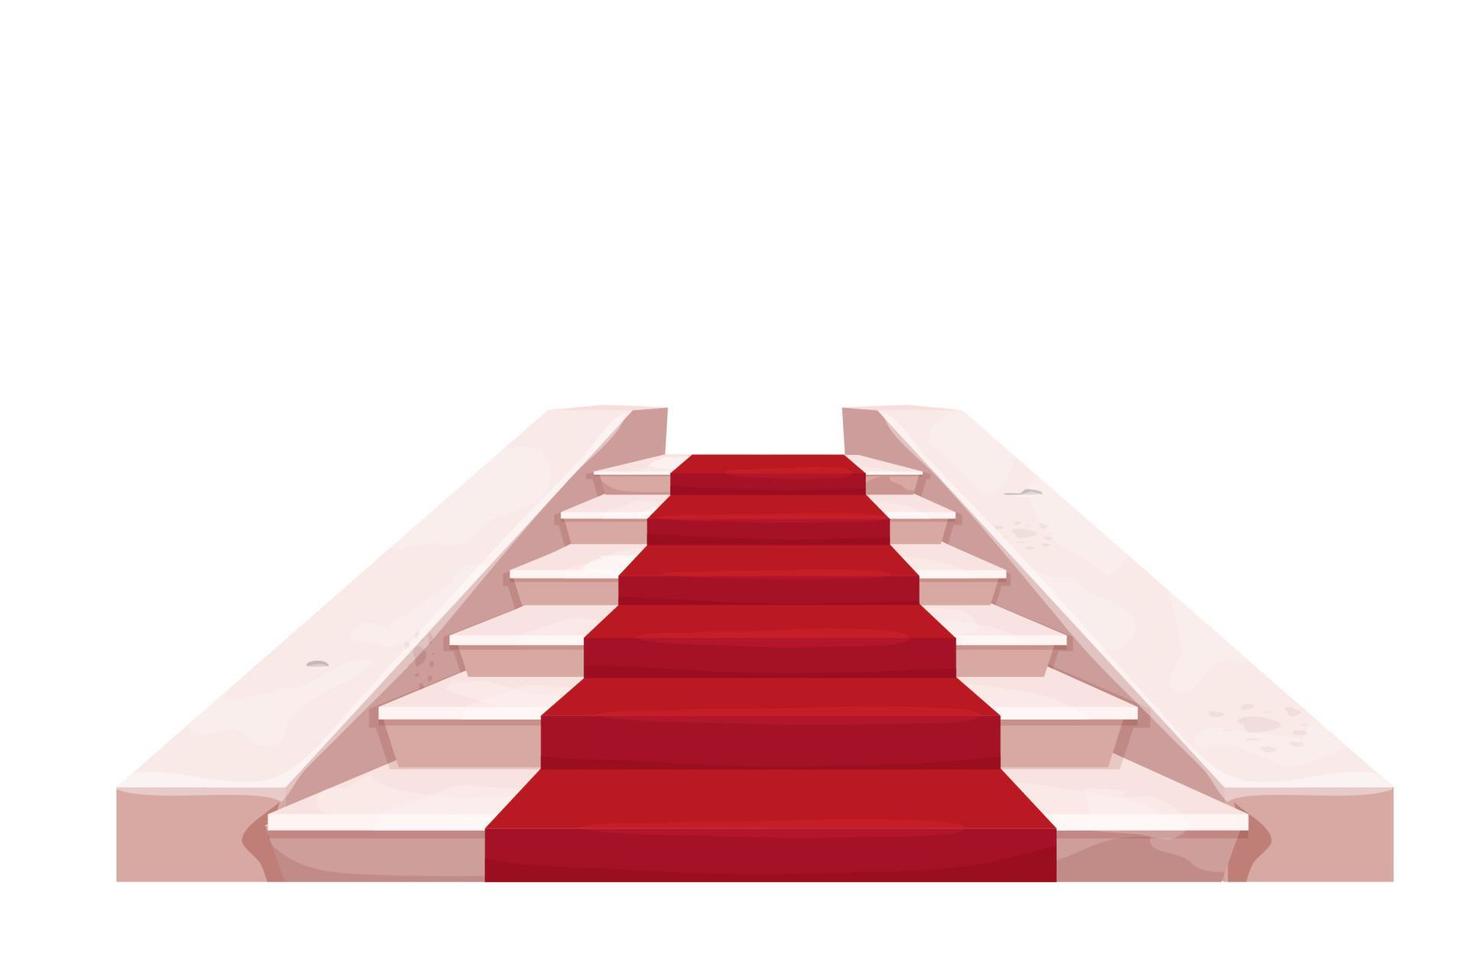 escaleras elegantes de mármol castillo interior de hadas con alfombra roja, objeto medieval en estilo de dibujos animados aislado sobre fondo blanco. activo del juego ui, construcción interior, escenario. ilustración vectorial vector